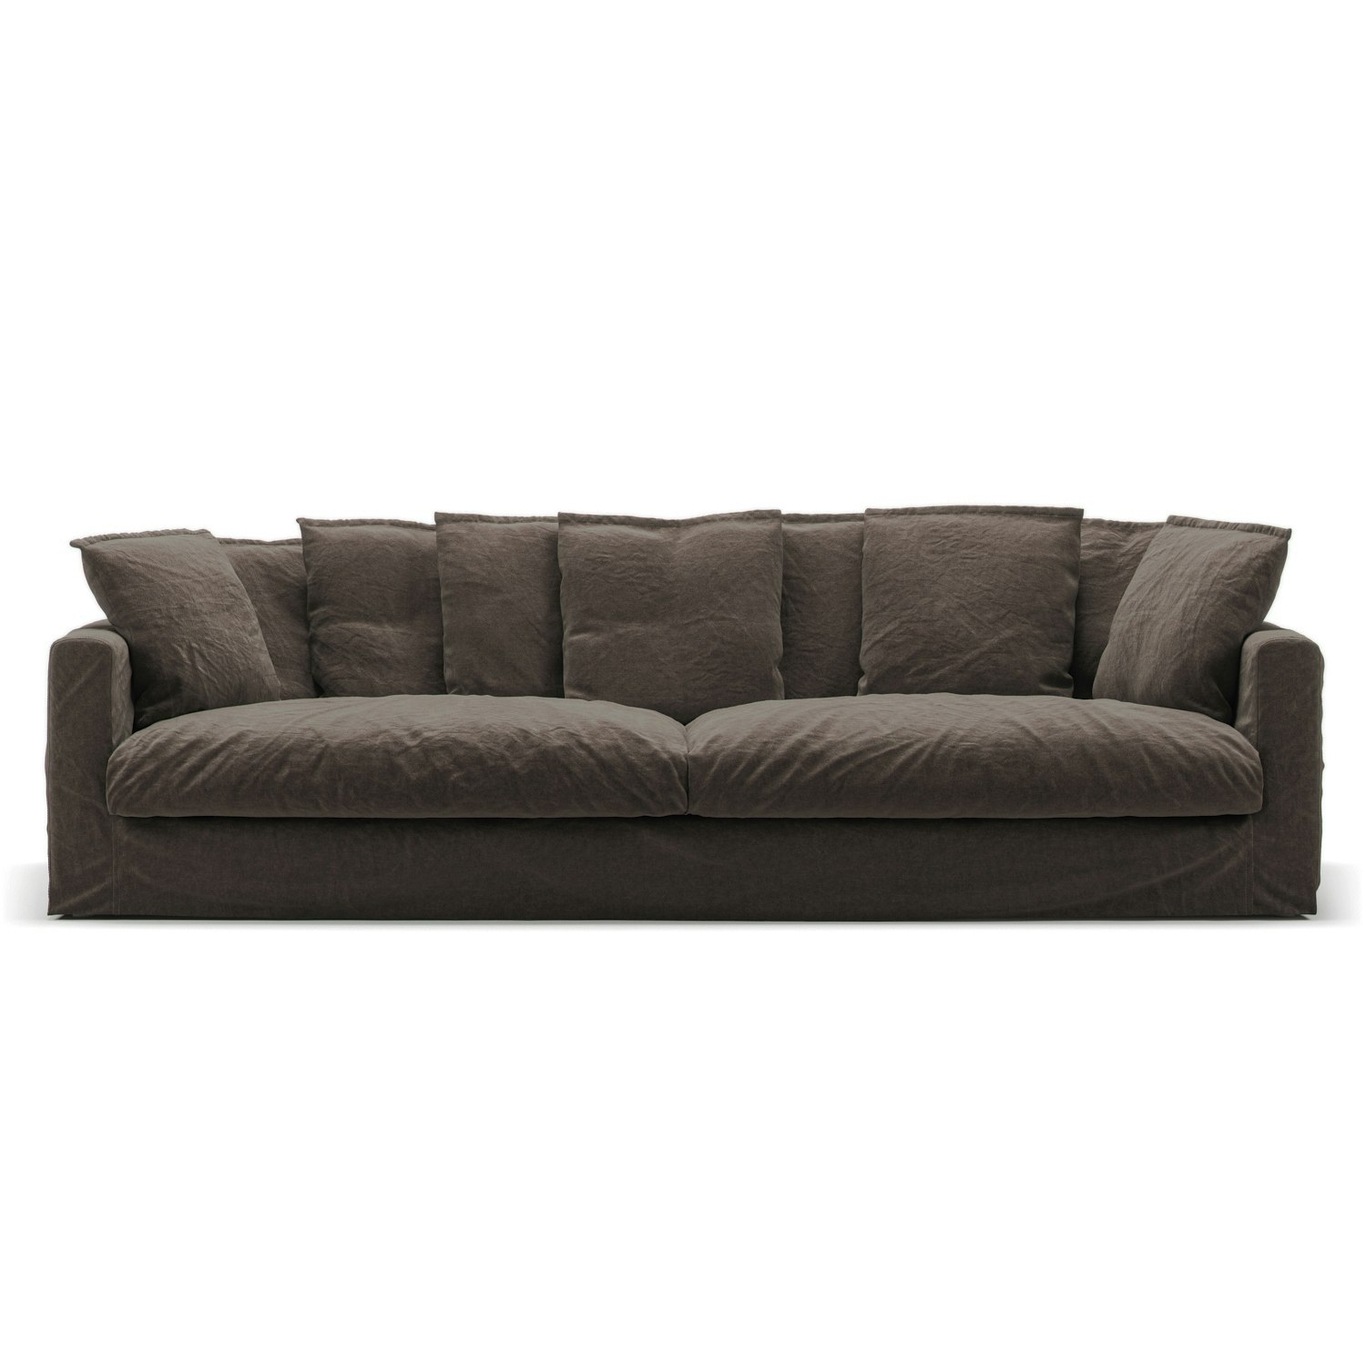 Le Grand Air Sofa 4-Seater Linen, Truffle Brown